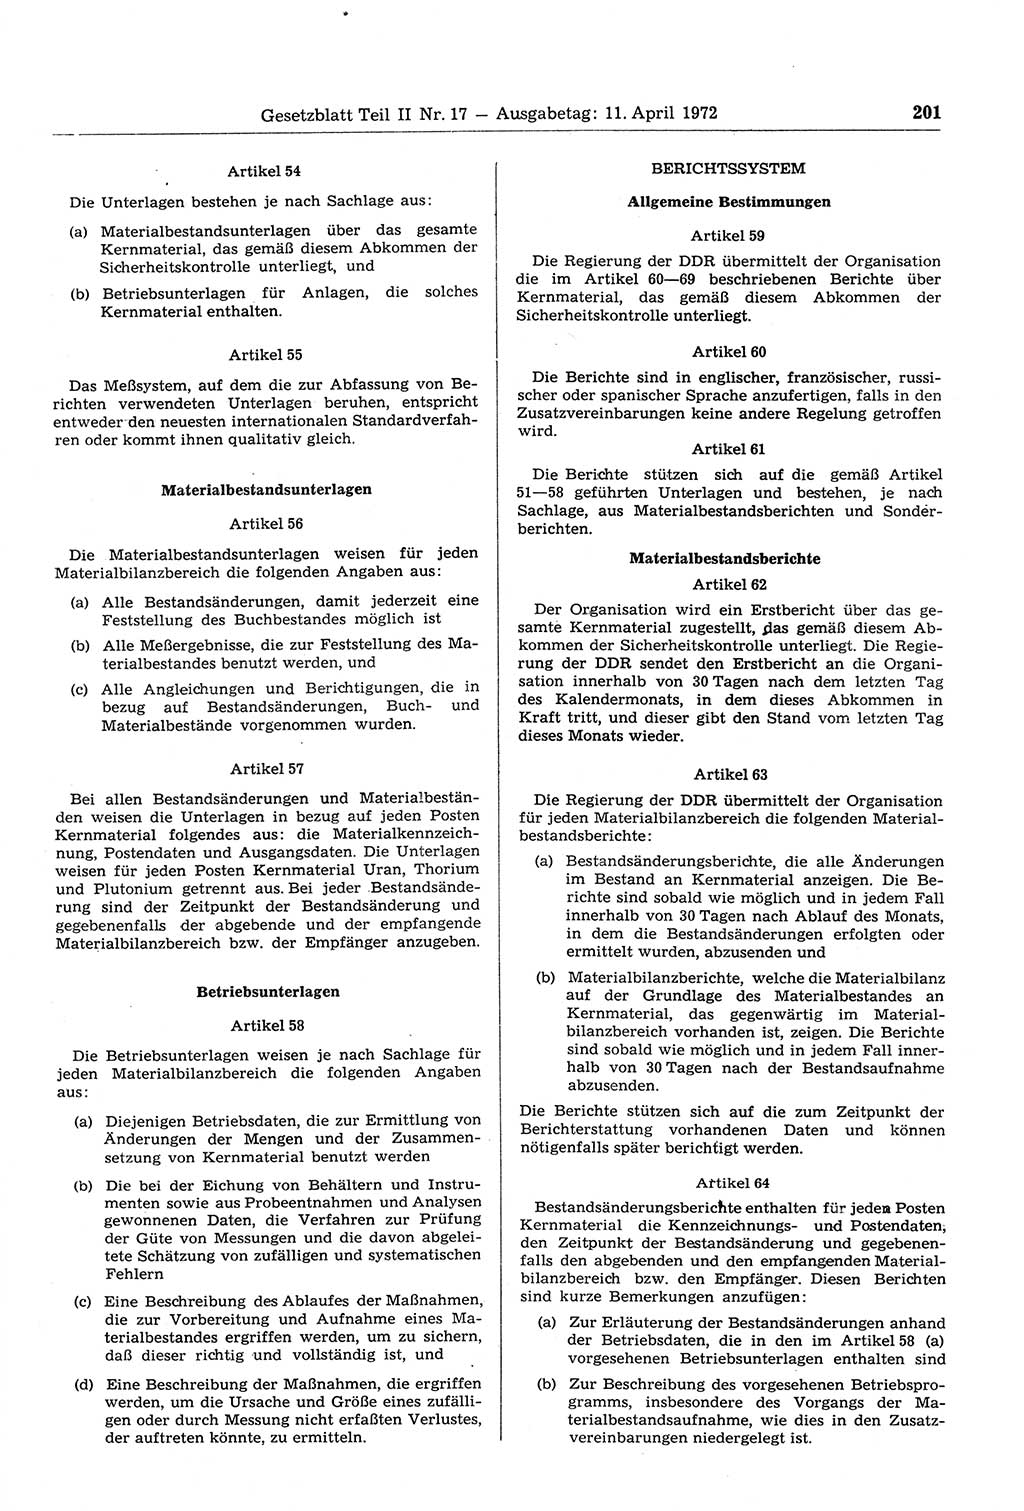 Gesetzblatt (GBl.) der Deutschen Demokratischen Republik (DDR) Teil ⅠⅠ 1972, Seite 201 (GBl. DDR ⅠⅠ 1972, S. 201)